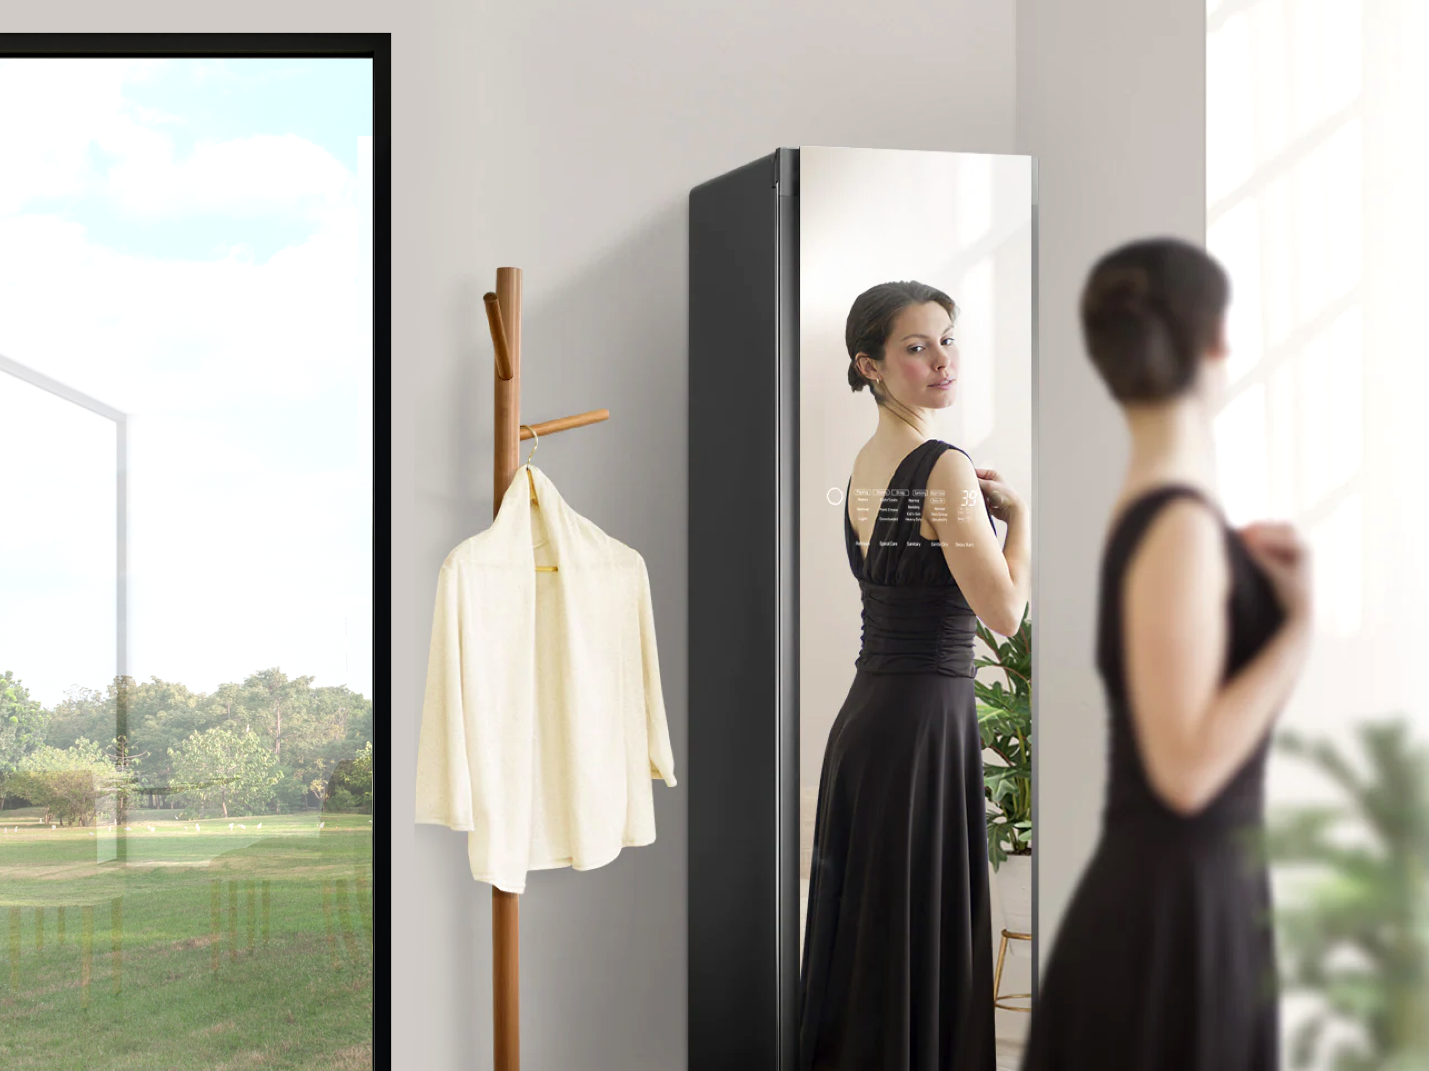 Tủ quần áo thông minh với mặt gương kính thời thượng: Siêu phẩm LG Styler mới toanh các chị em đều muốn sở hữu - Ảnh 3.